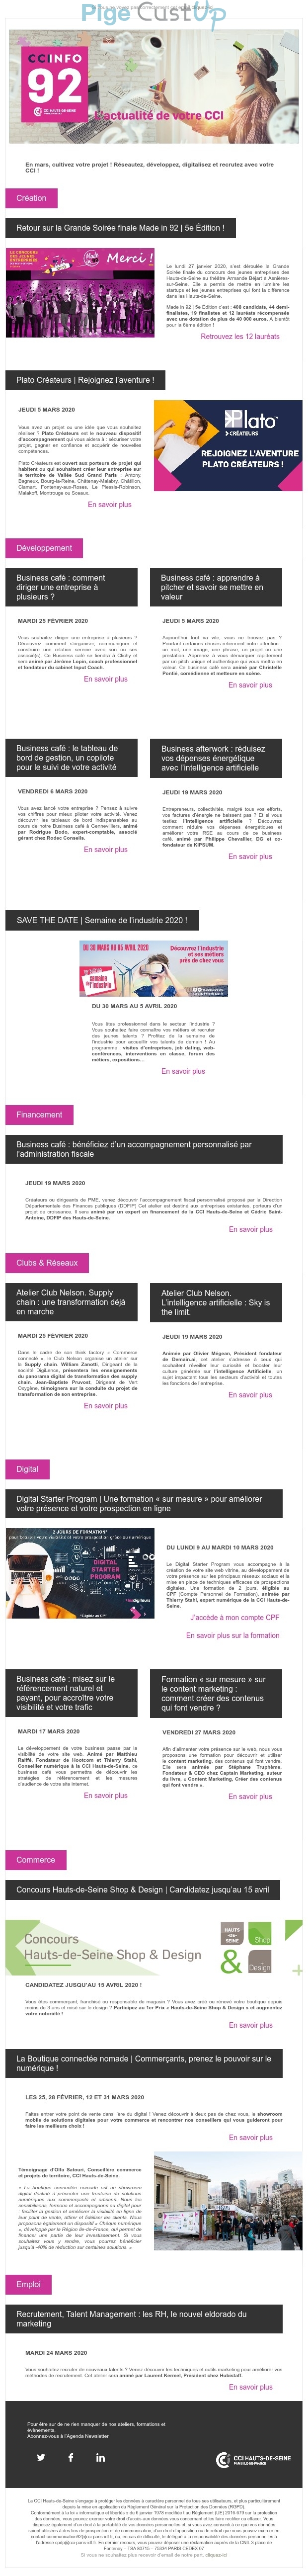 Exemple de Type de media  e-mailing - CCI - Marketing marque - Communication Services - Nouveaux Services - Marketing relationnel - Newsletter